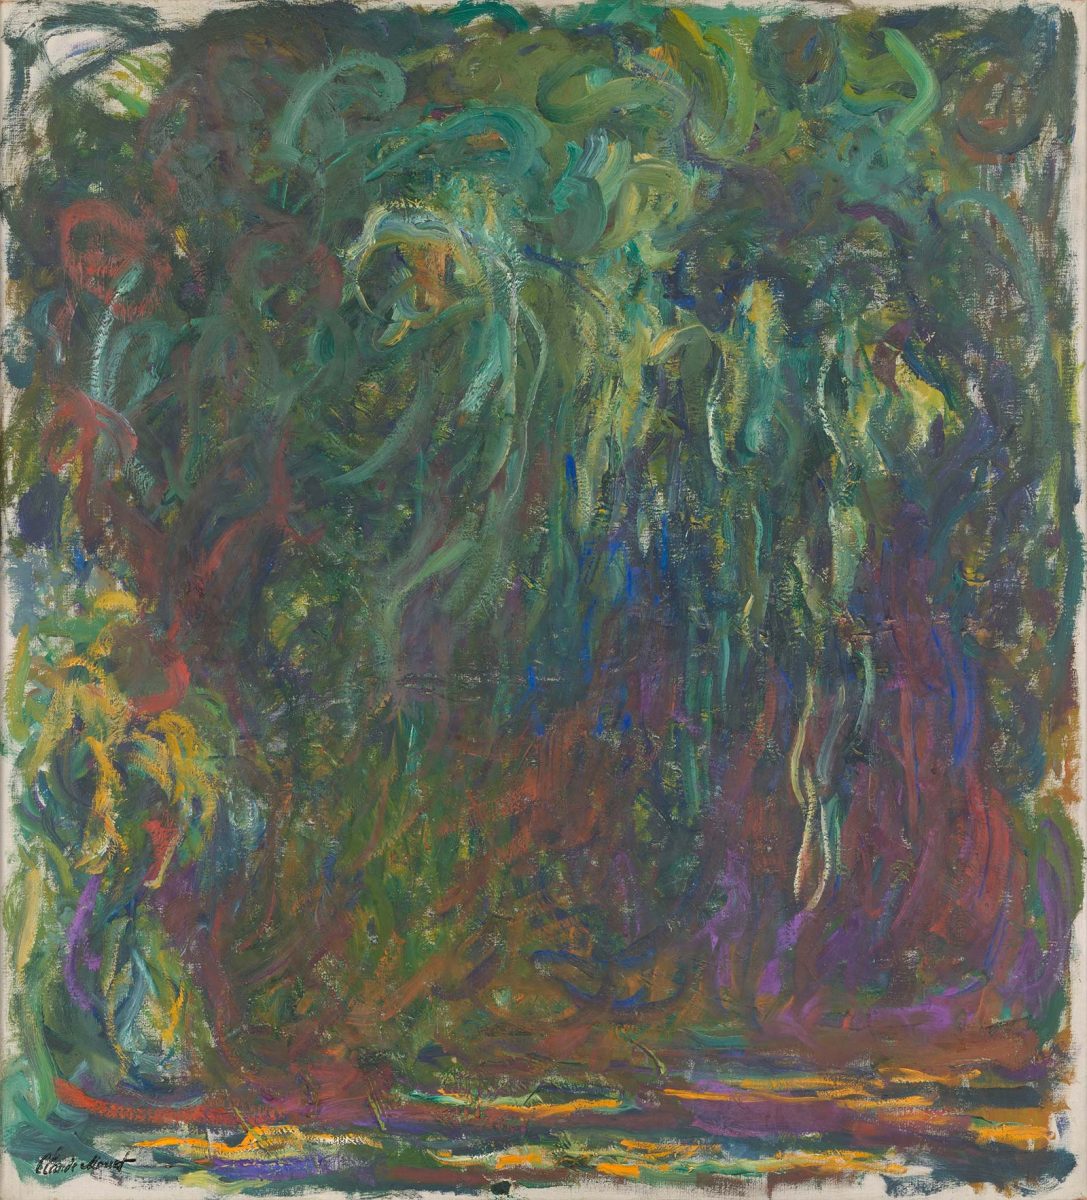 Claude Monet (1840-1926), Saule pleureur, entre 1920 et 1922. Huile sur toile, 110 x 100 cm © Paris, musée d’Orsay, donation de Philippe Meyer, 2000, RF 2000-21 © RMN-Grand Palais (musée d’Orsay) / Adrien Didierjean